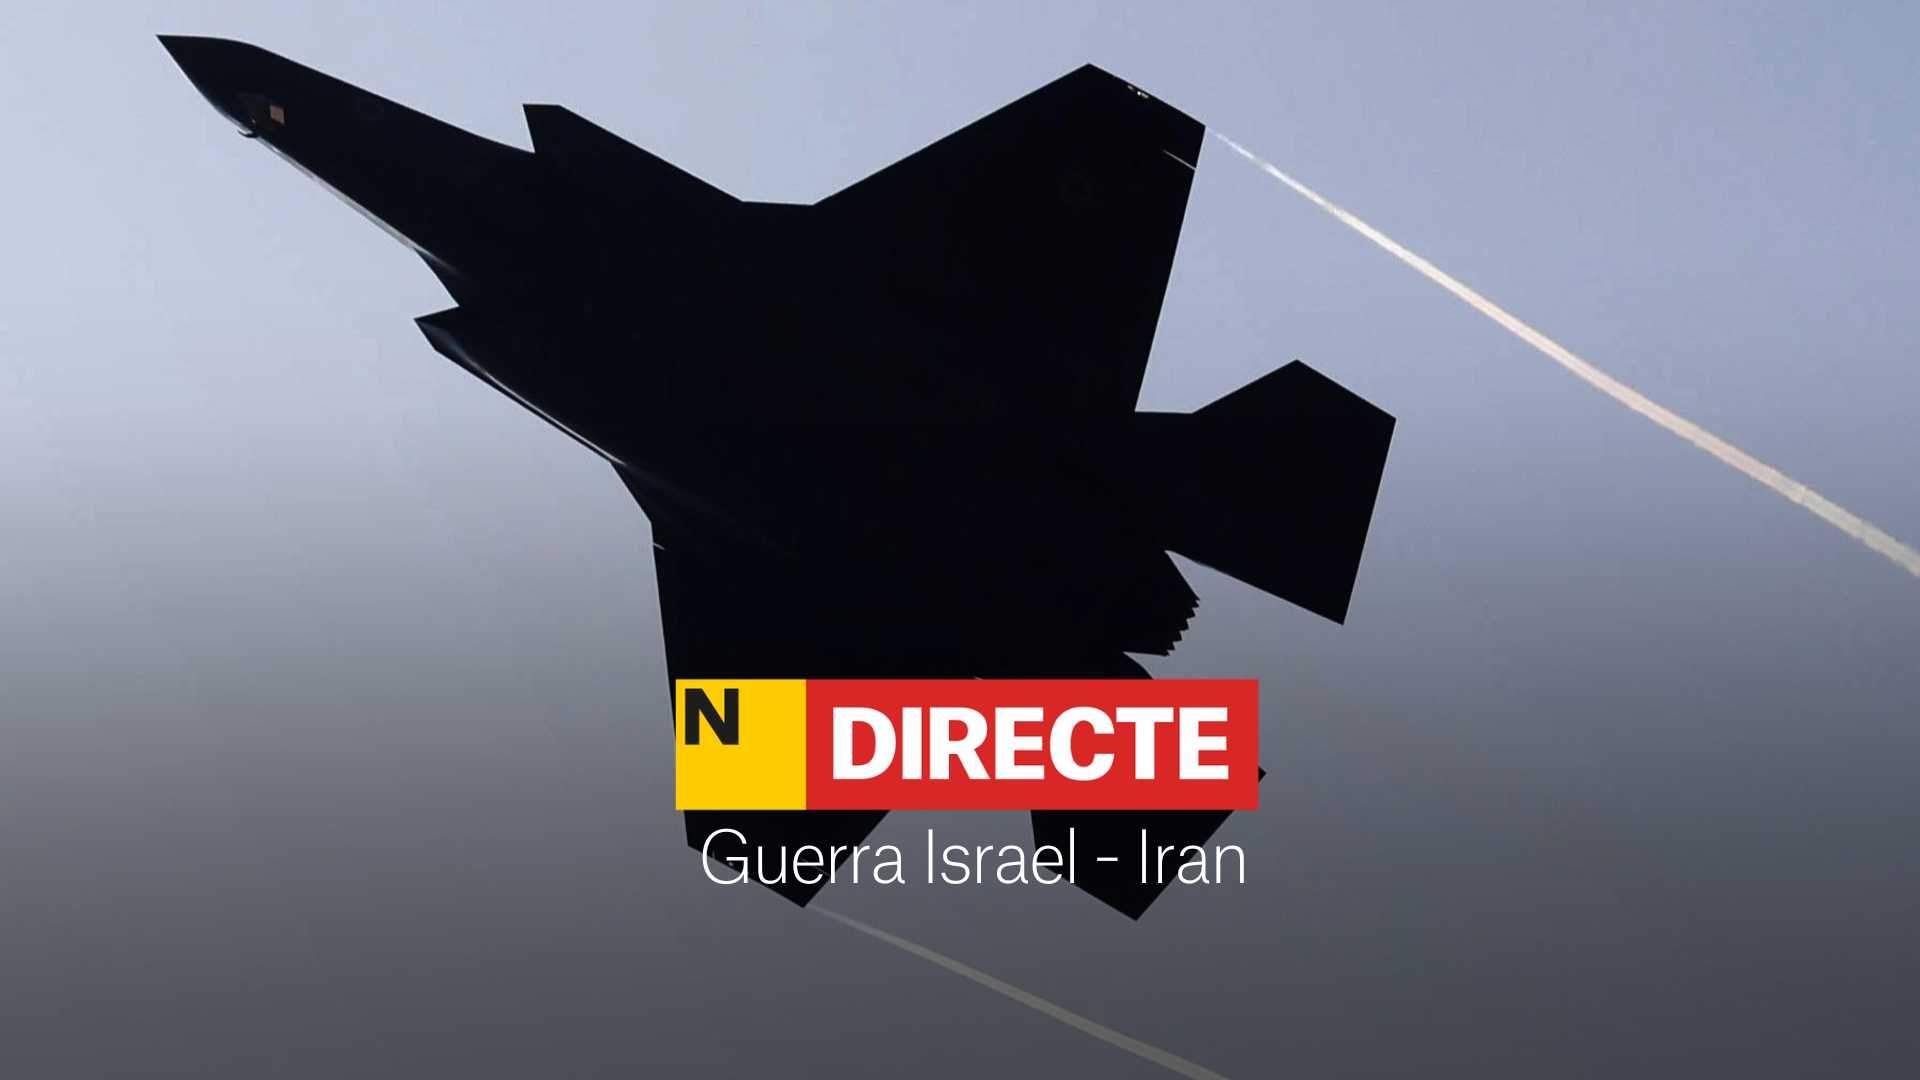 Atac d'Israel a l'Iran, DIRECTE | Última hora del conflicte a l'Orient Mitjà